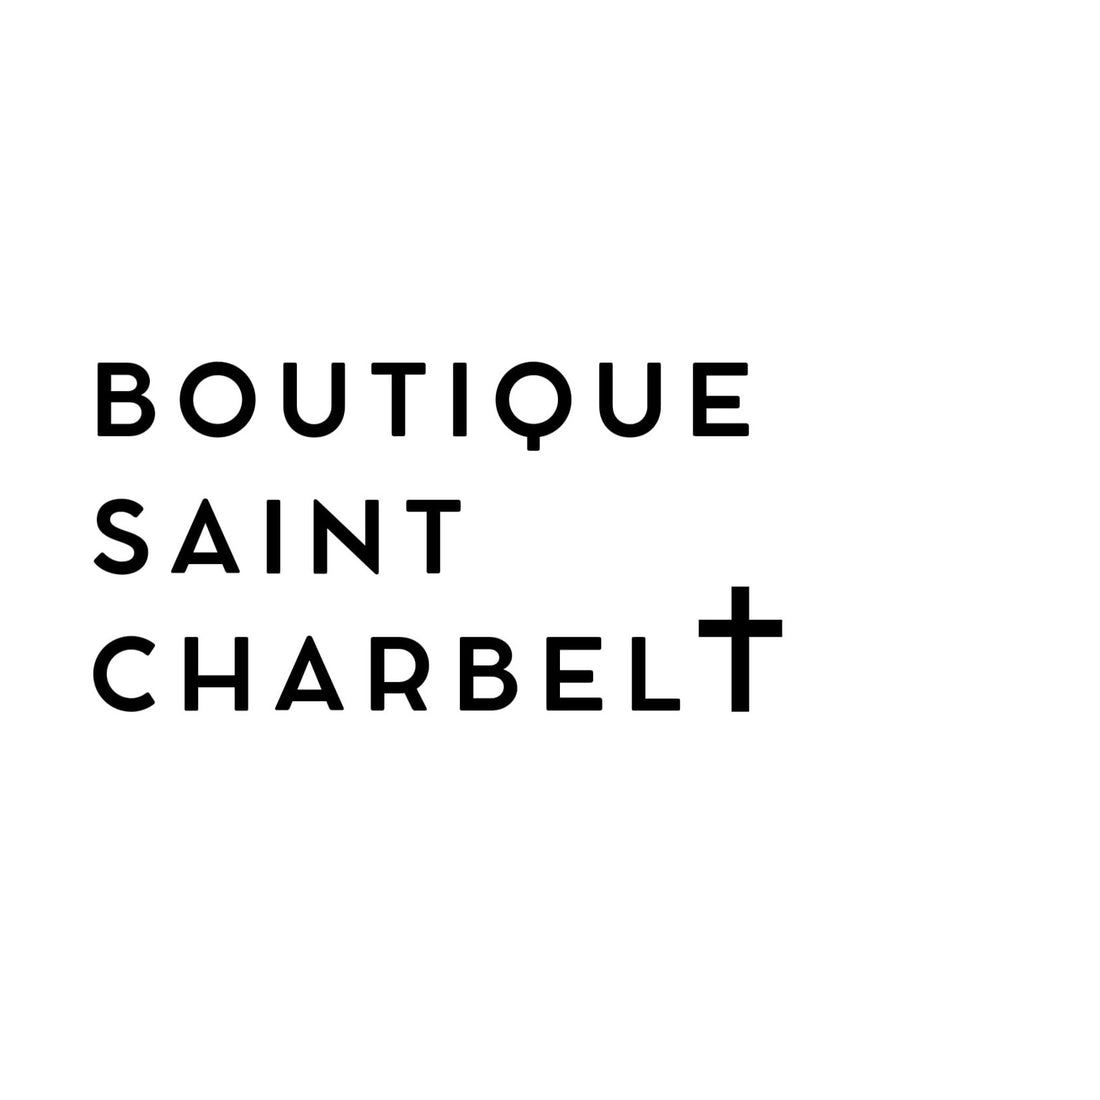 L'avenir de la Boutique Saint Charbel